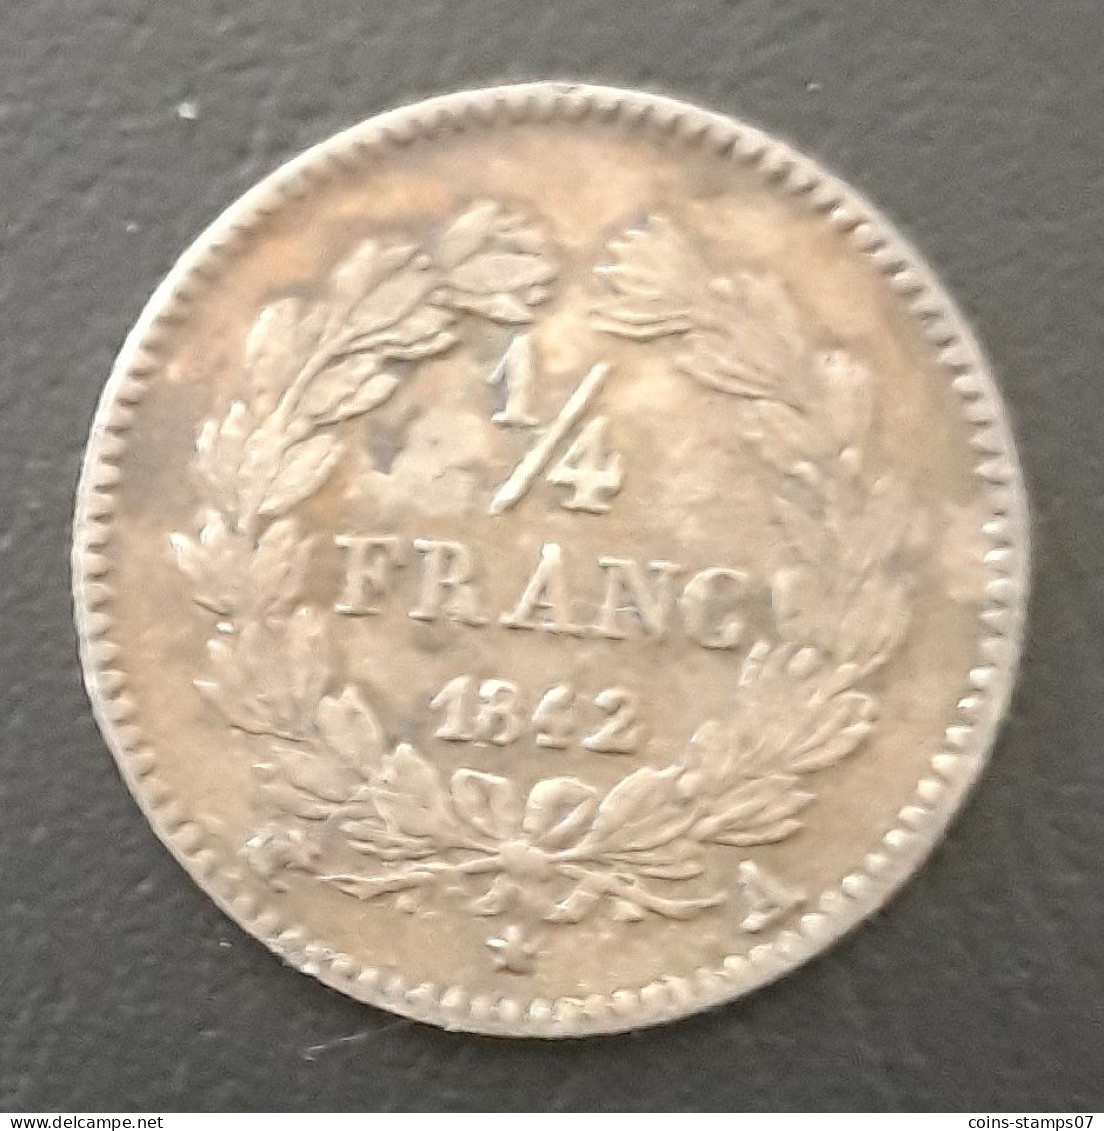 France - Louis Philippe I - 1/4 Franc 1842 A (Paris) - 1/4 Franc